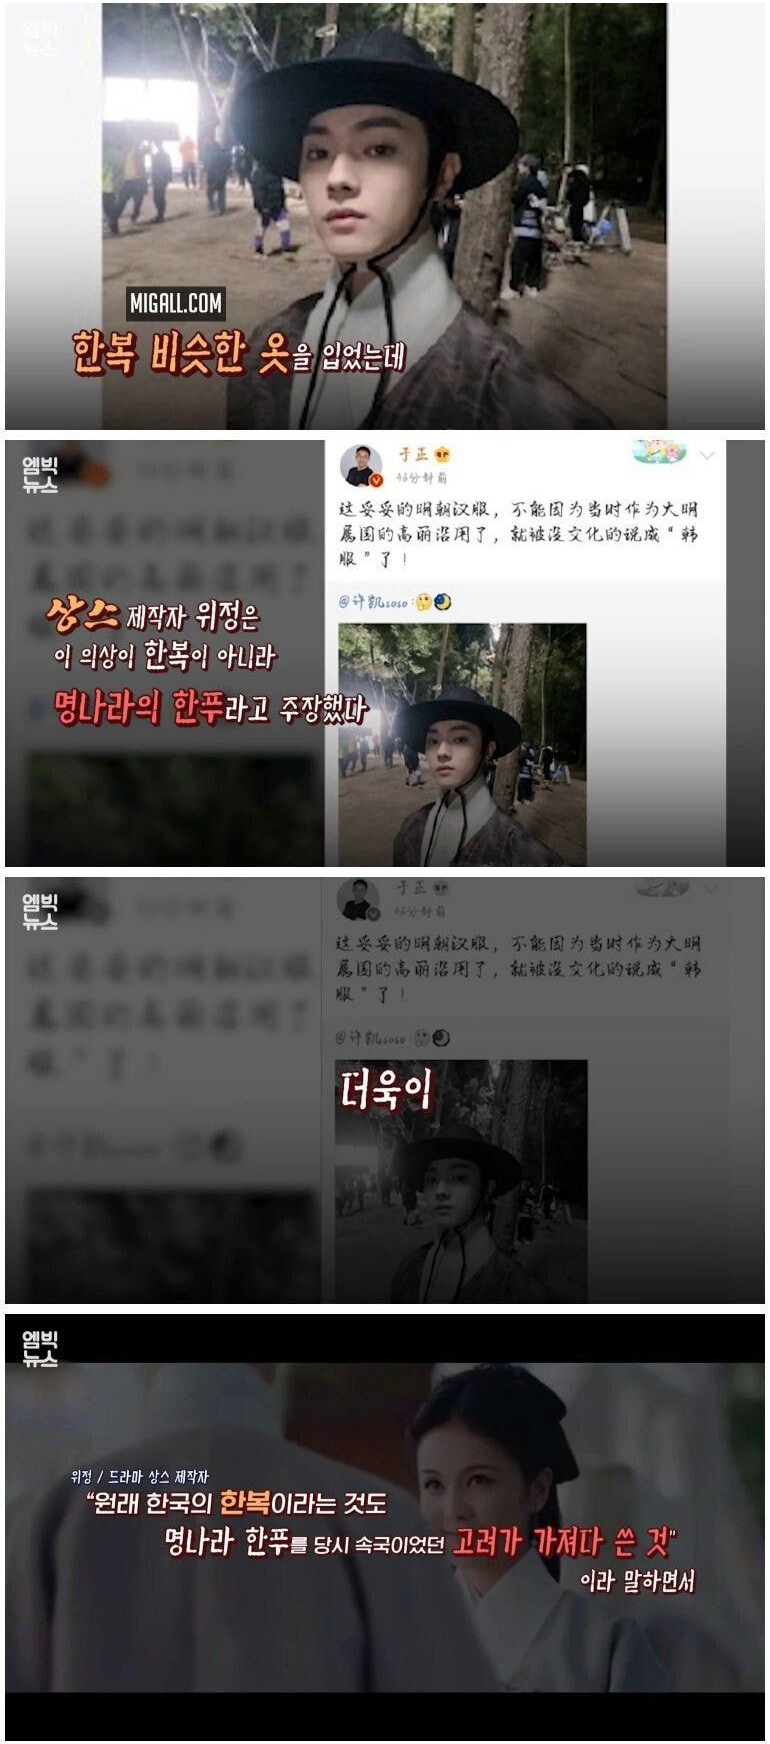 Корейские нетизены твёрдо убеждены, что Китай атакует корейских знаменитостей и культуру из-за зависти к успеху K-Pop